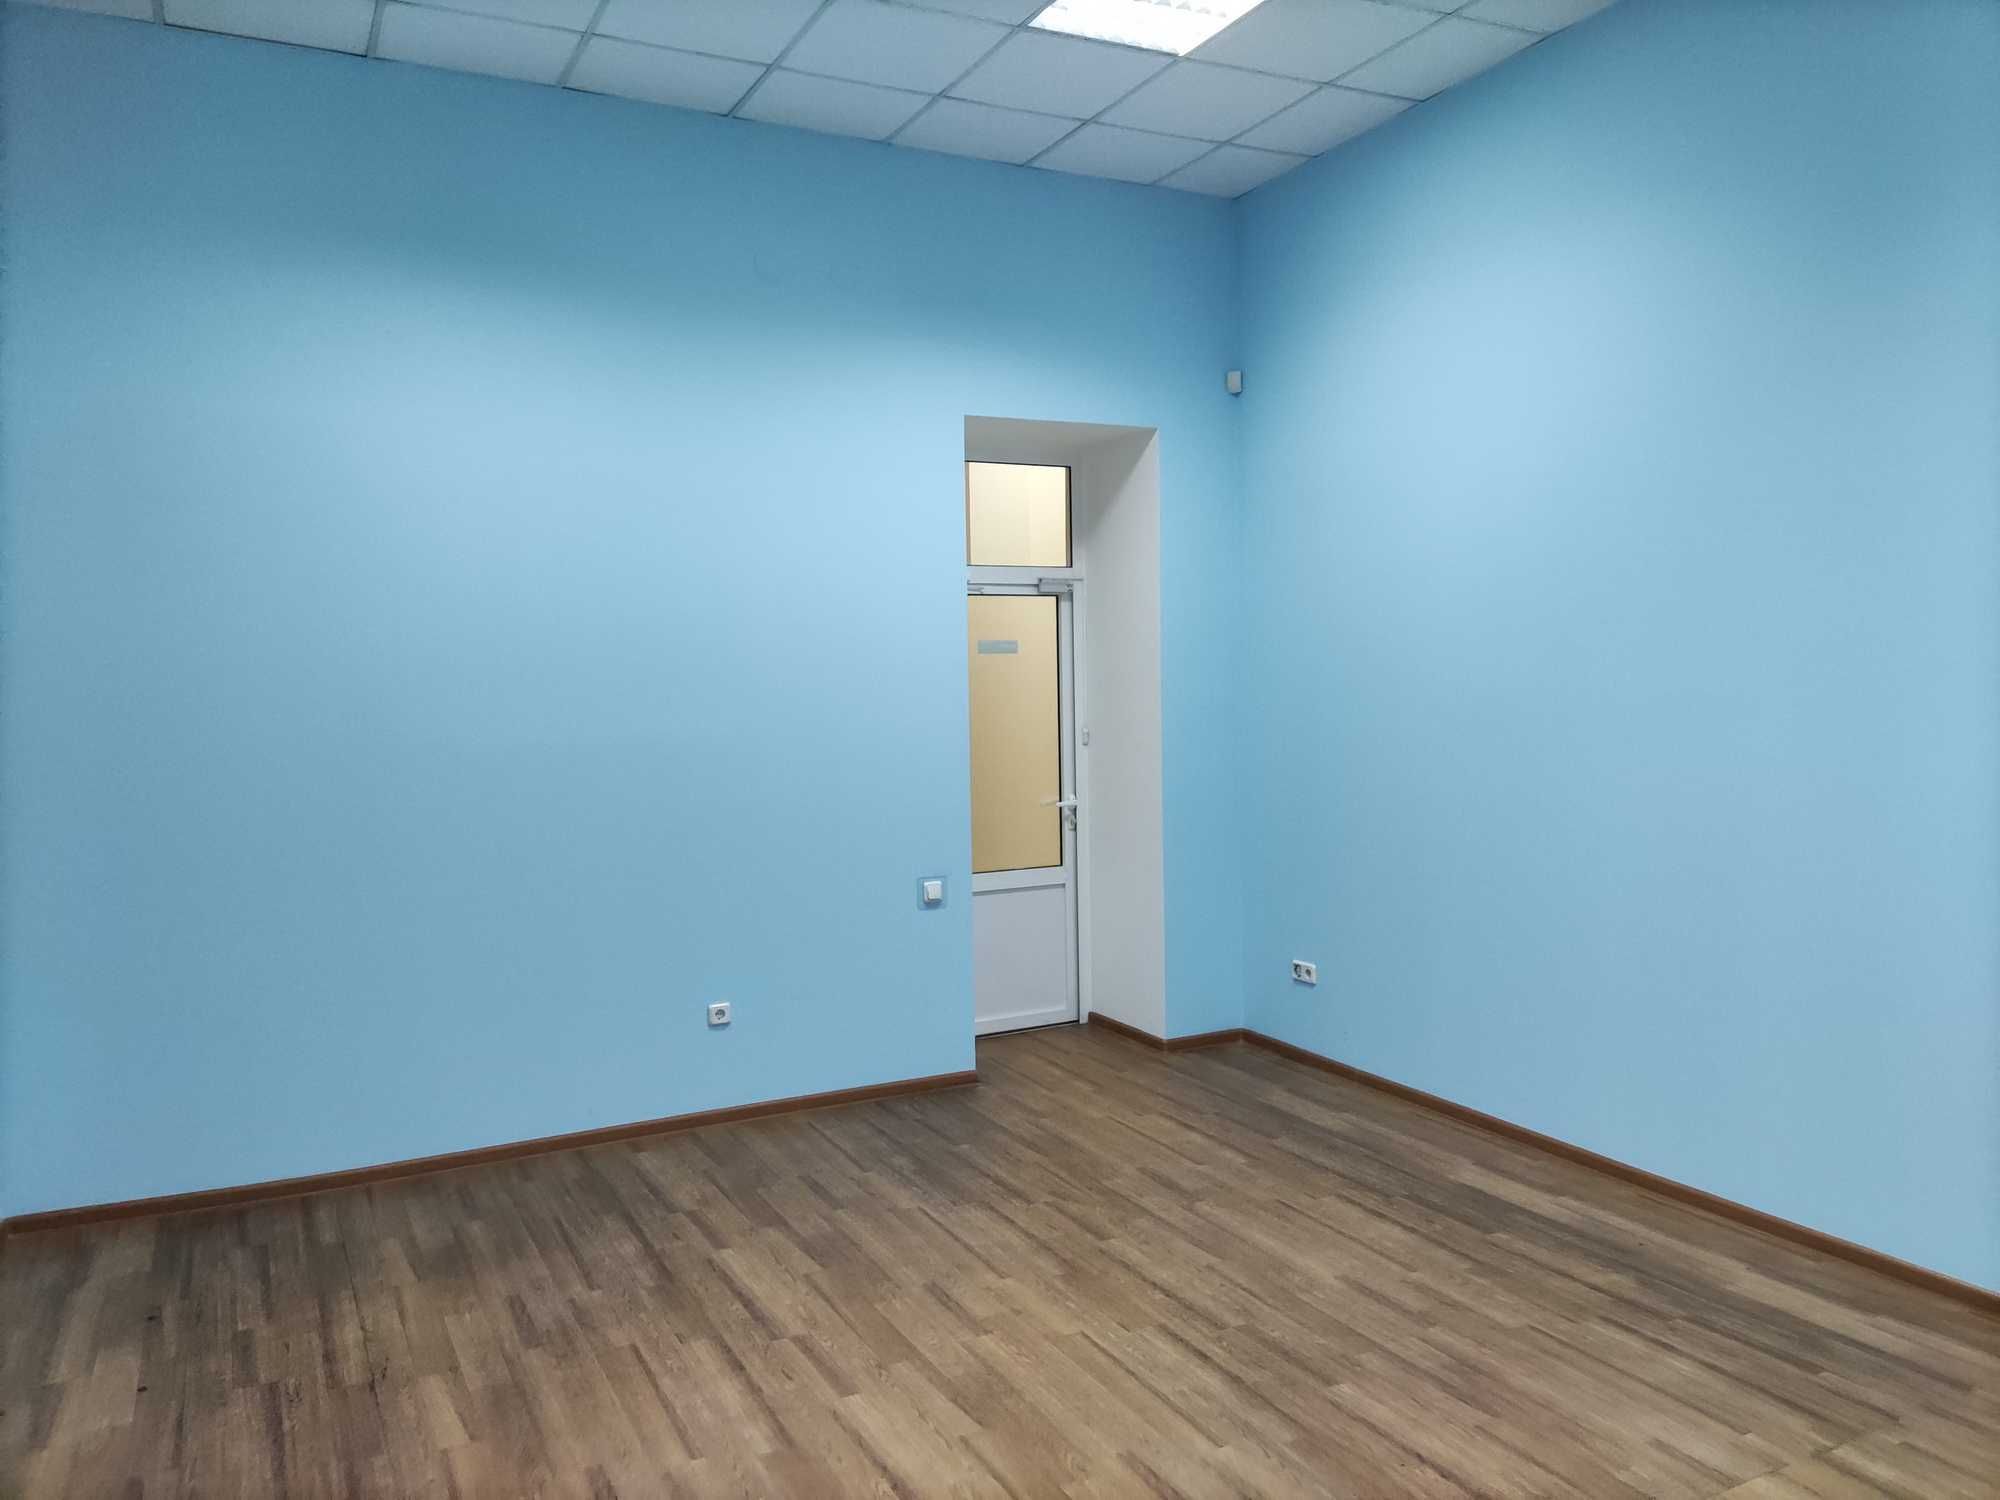 Продам офис, можно салон красоты, 175 кв.м - Жуковского